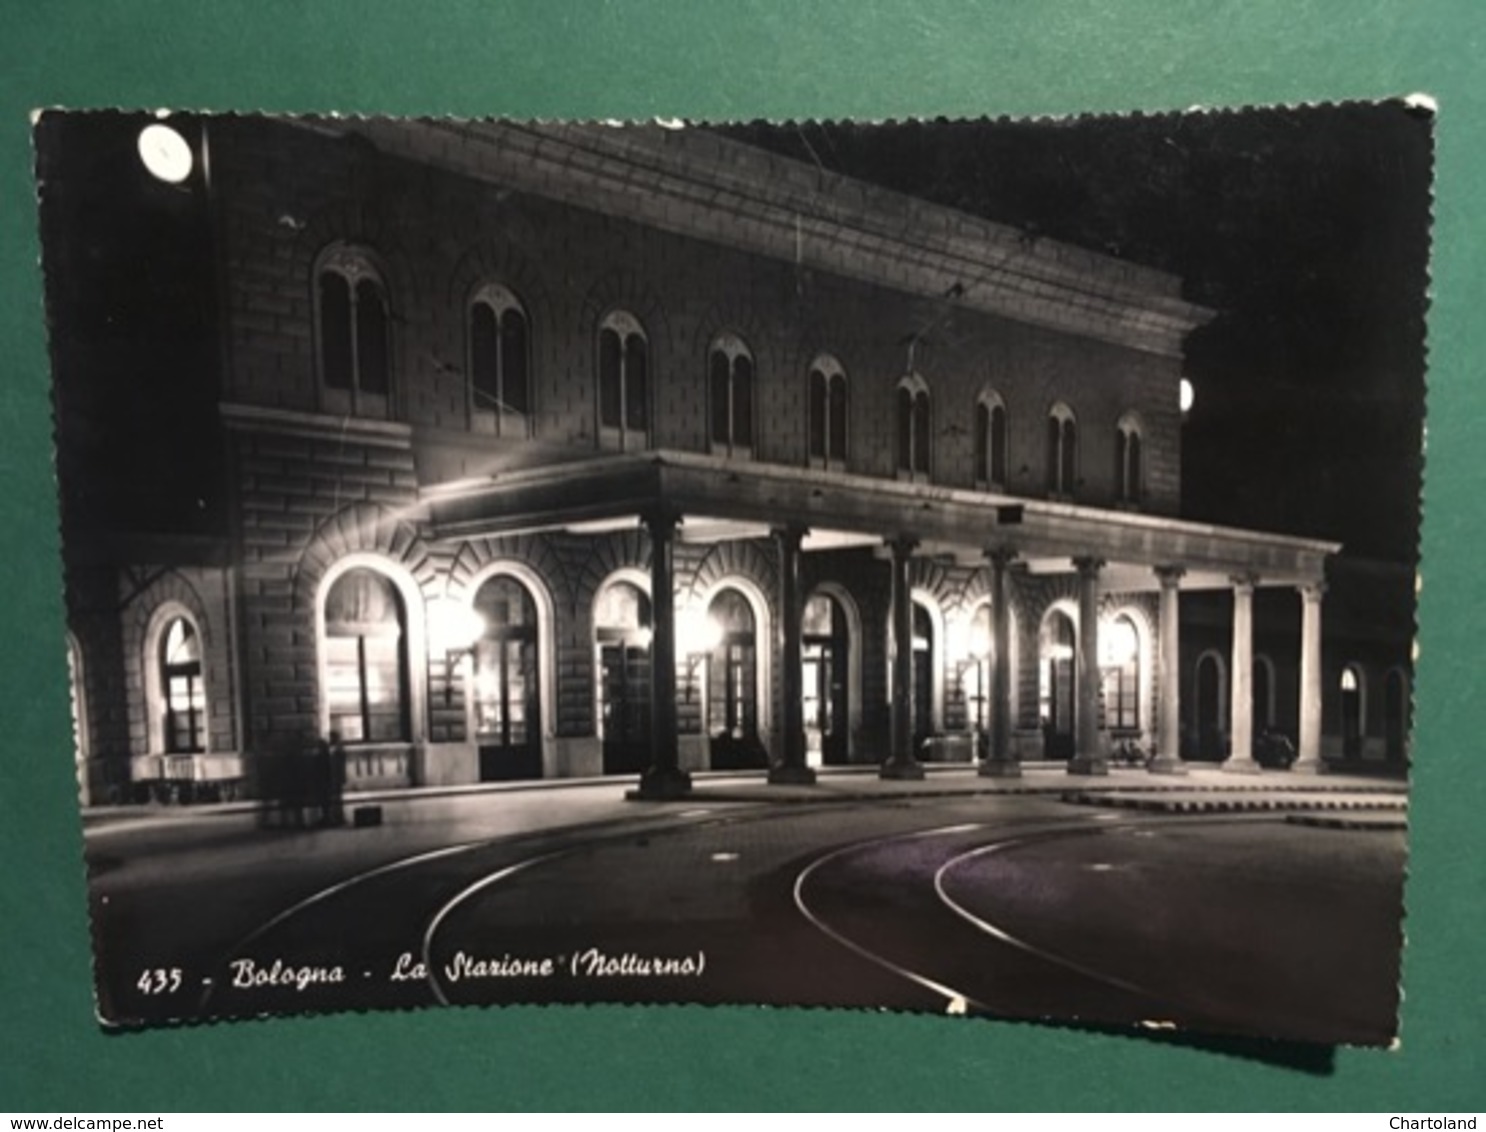 Cartolina Bologna La Stazione - Notturno - 1960 - Bologna